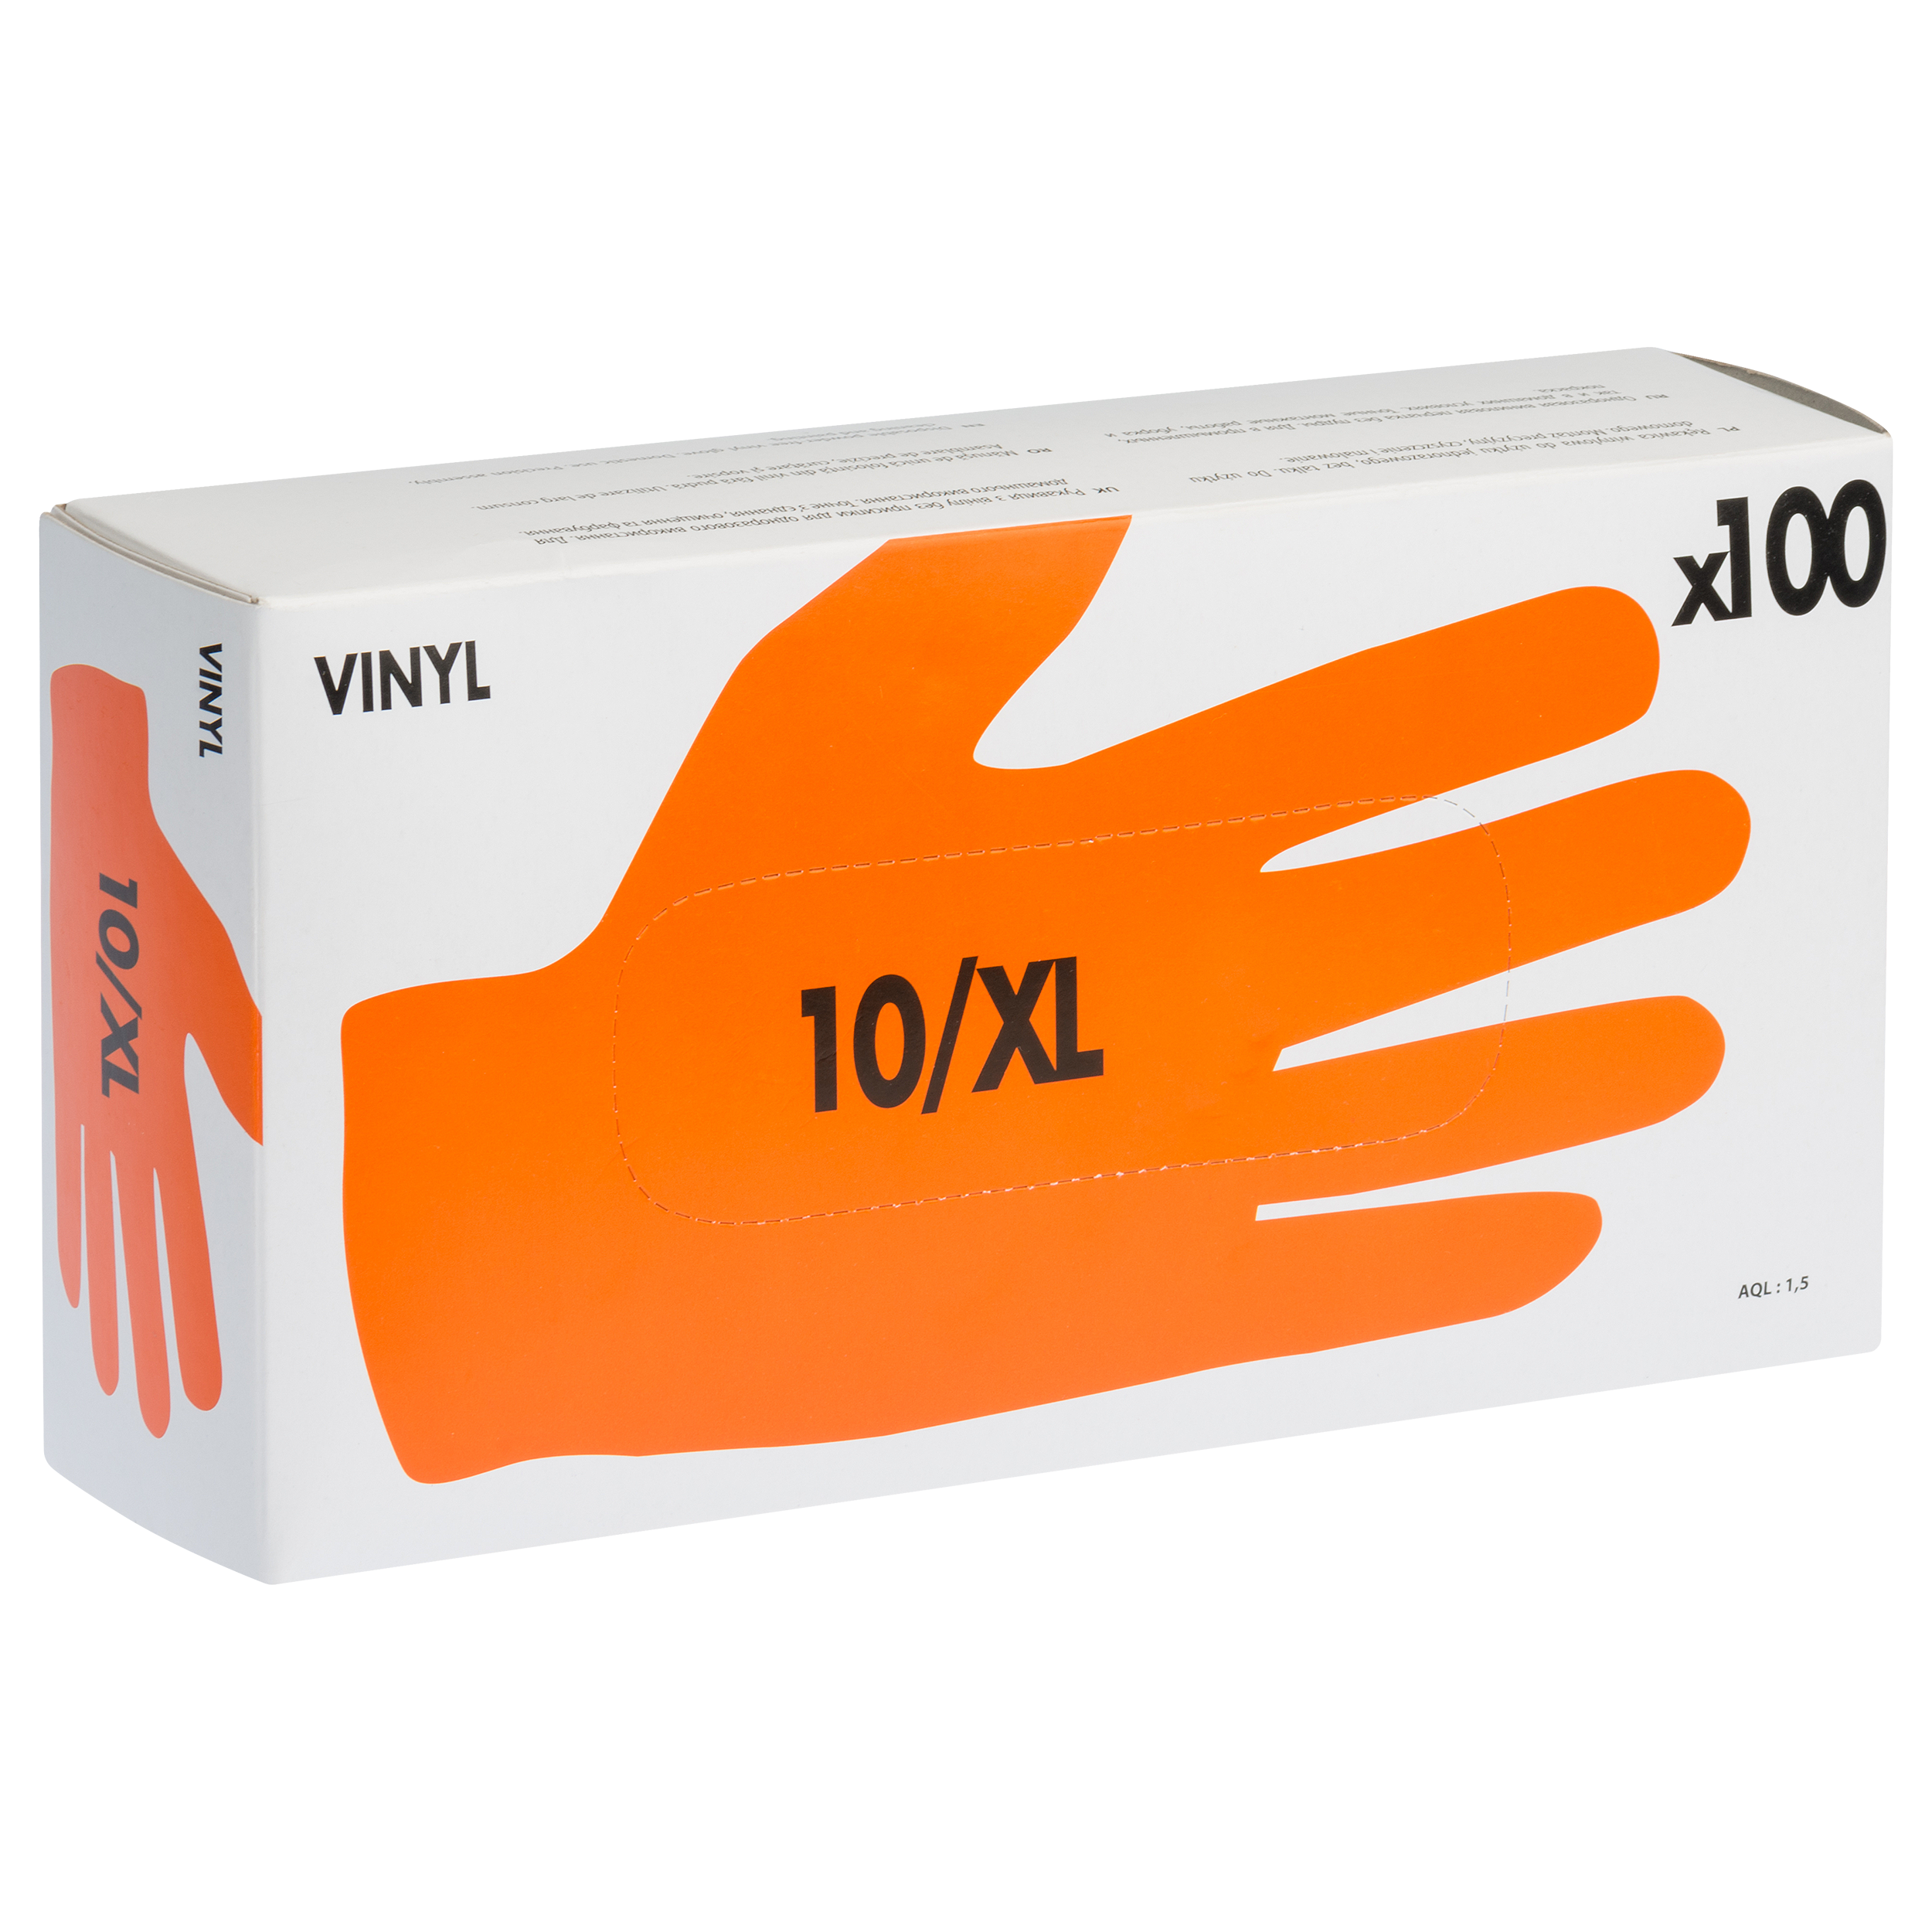 Pack 100 guantes desechables dexter t 10 / xl